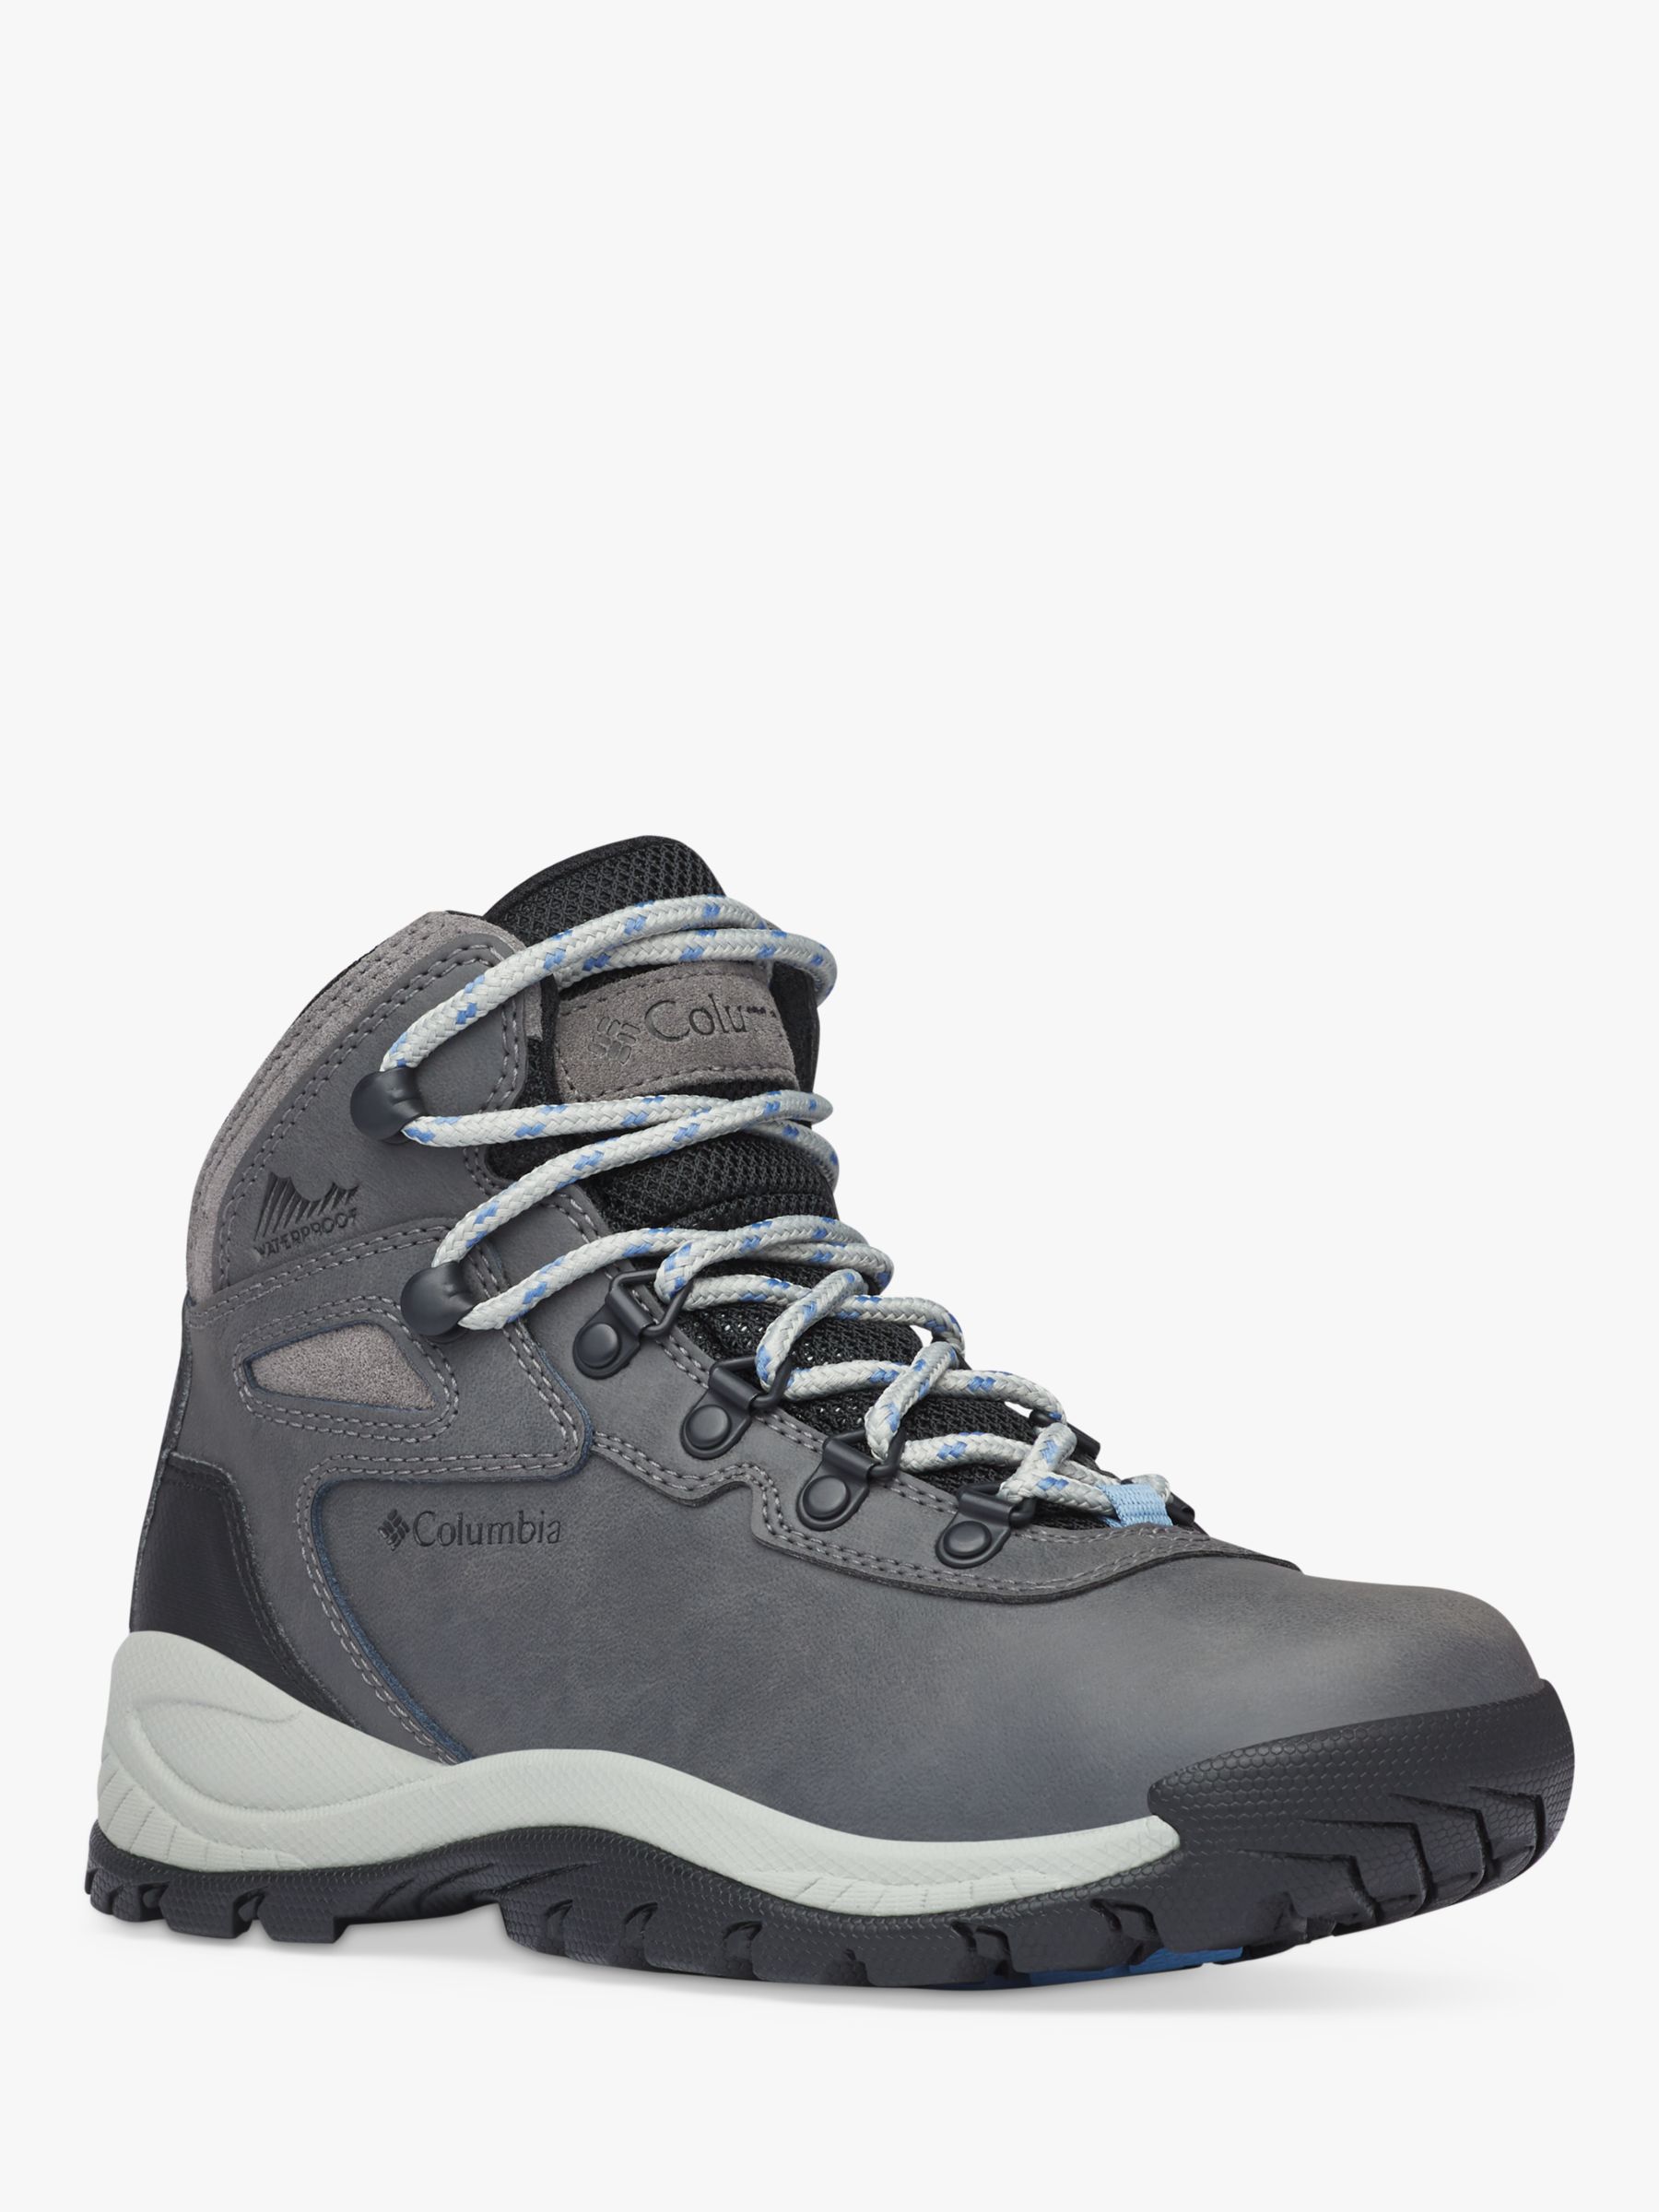 bind Hensigt pude Columbia Newton Ridge™ Plus Women's Waterproof Walking Boots, Quarry/Cool  Wave, 4